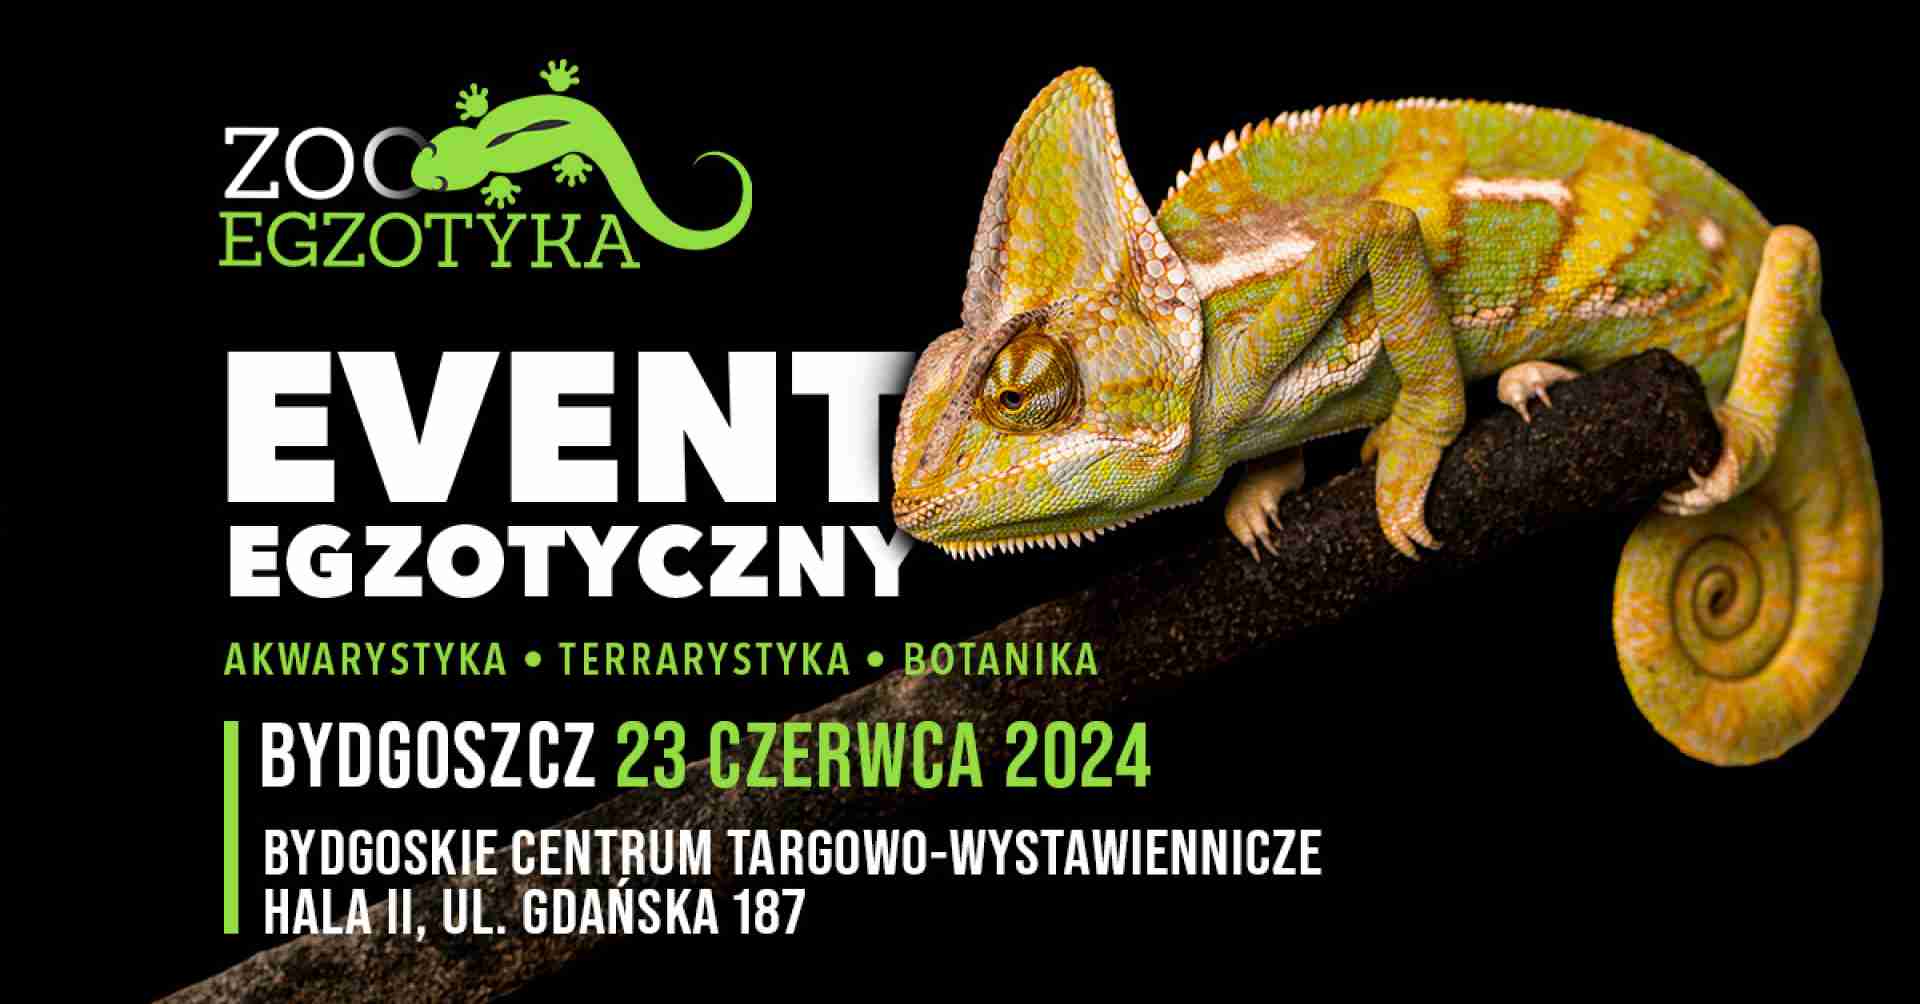 ZooEgzotyka Bydgoszcz 23.06.2024 AD [10:00 - 16:00]